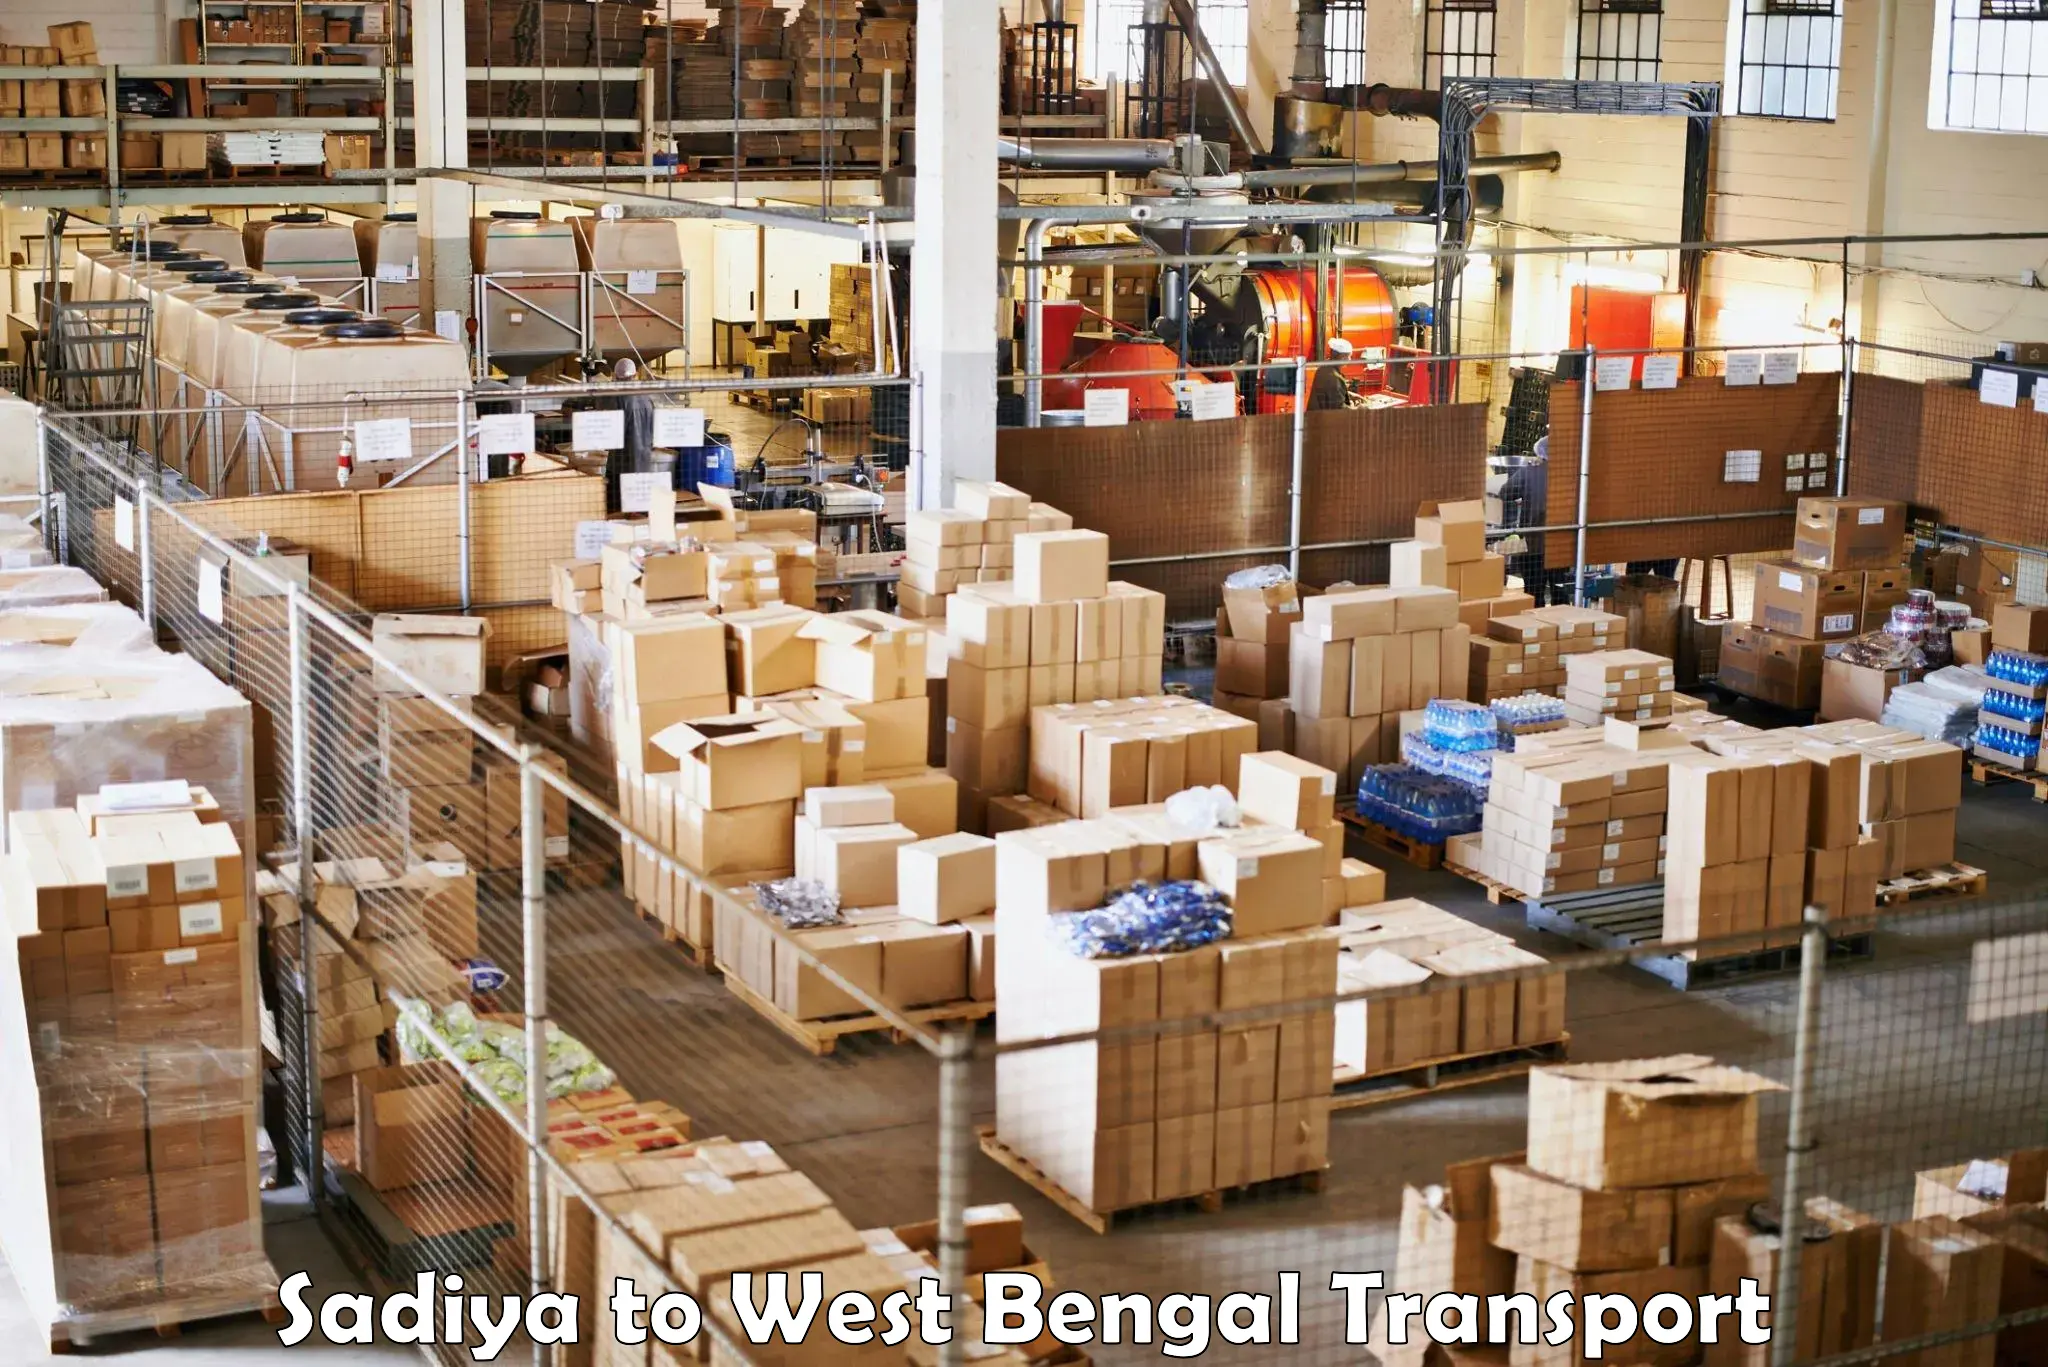 Air freight transport services Sadiya to West Bengal